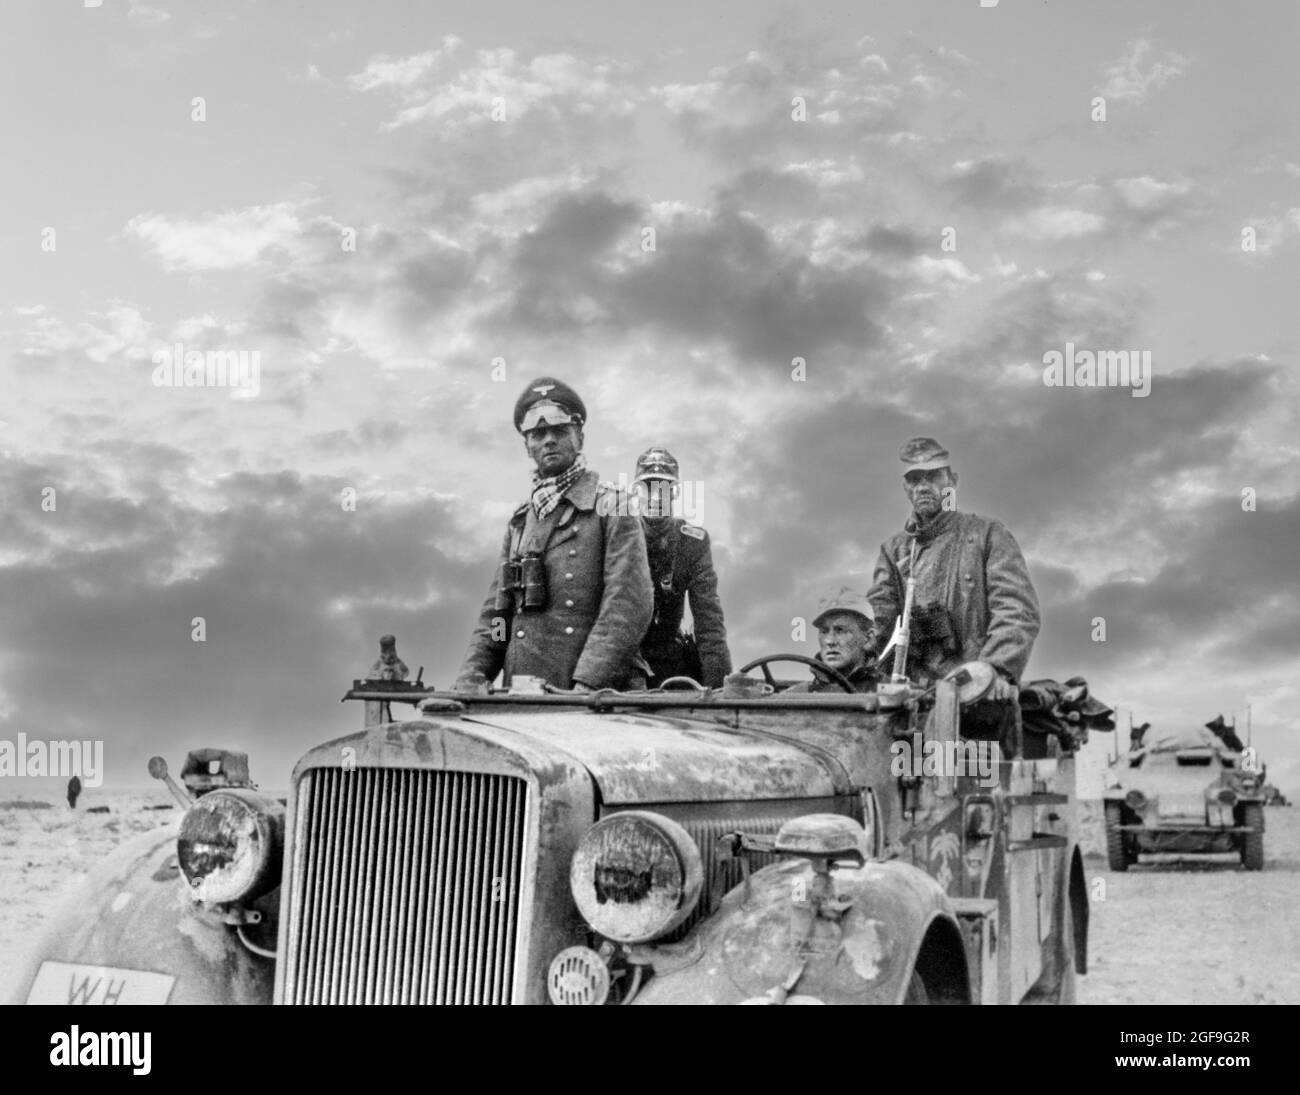 ROMMEL General Rommel ‘ Generalfeldmarschall ‘ Feldmarschall Erwin Rommel in Uniform mit Fernglas und Wüstenvisier, stehend in offenem Wüstenranger Jeep Fahrzeug Nordafrika (der Wüstenfuchs) WW2 mit der Panzer Division 15th zwischen Tobruk und Sidi Omar. Libyen, der zweite Weltkrieg von 1941 mit verstärkter dramatischer Lufteffekte dahinter Stockfoto